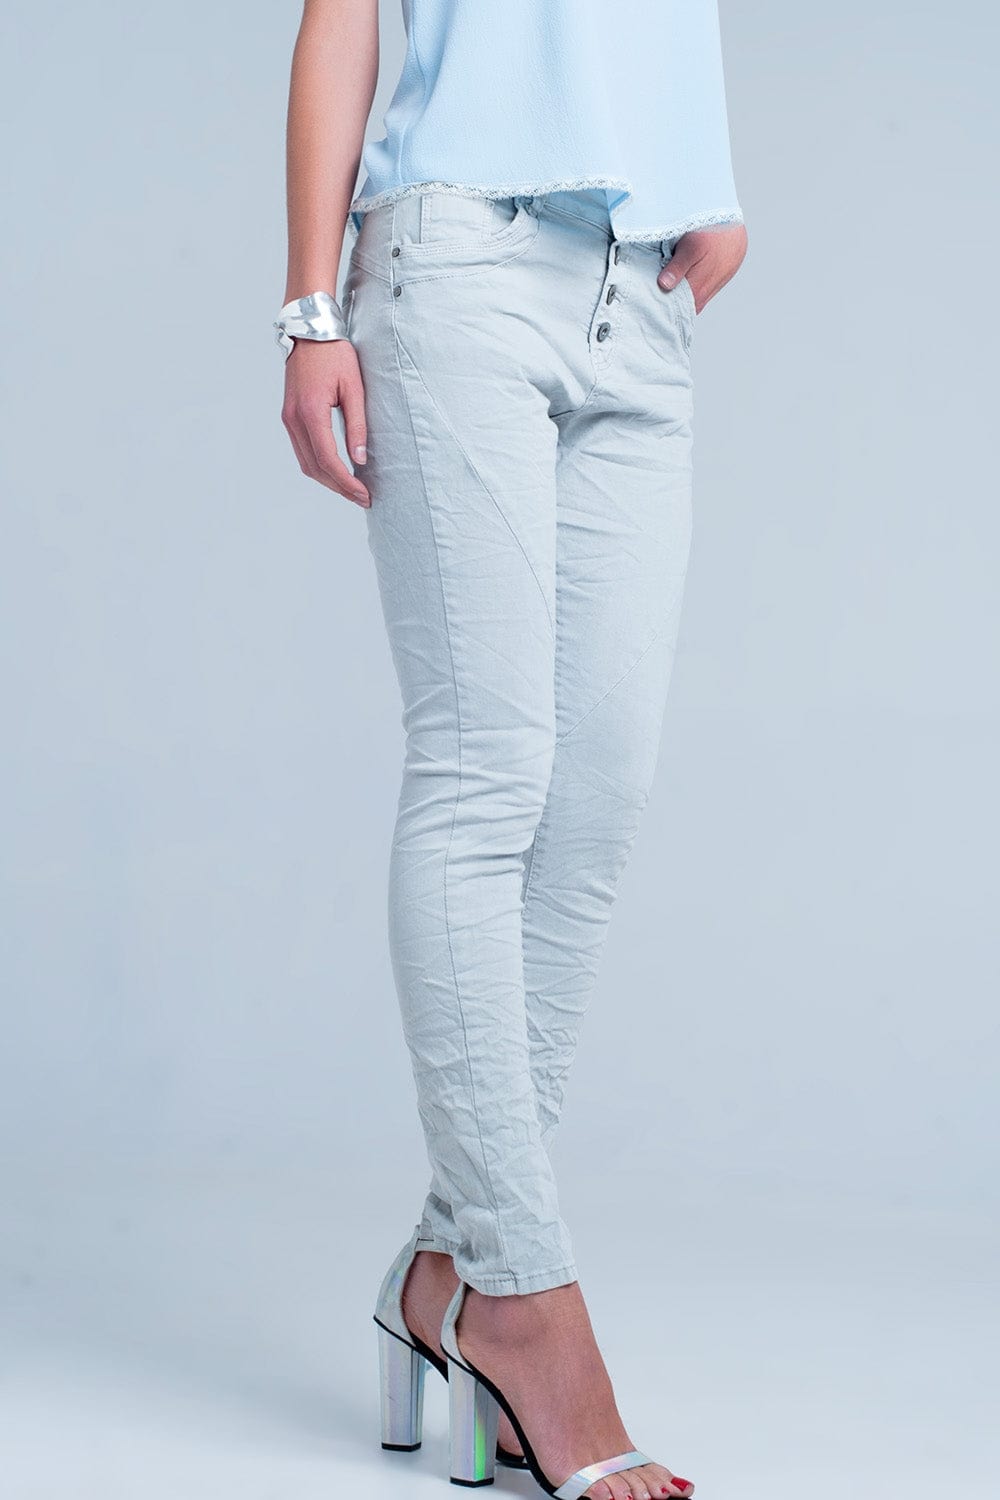 Q2 Jeans Grey Low rise boyfriend jeans